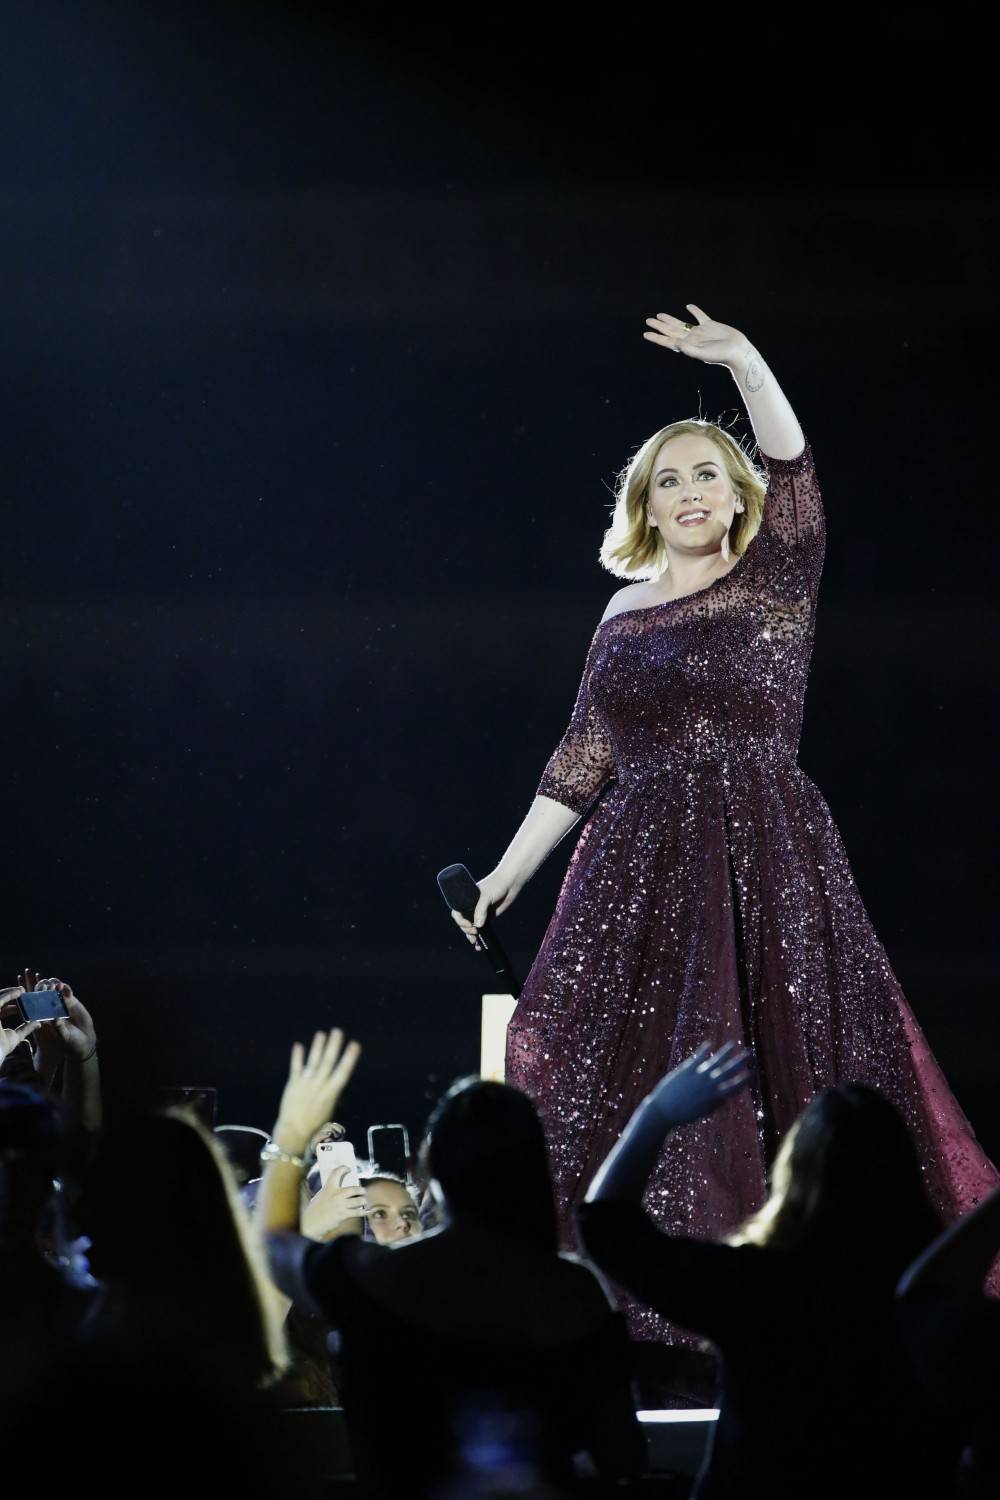 Adele cancella tutti i concerti: "Sono devastata, perdonatemi"